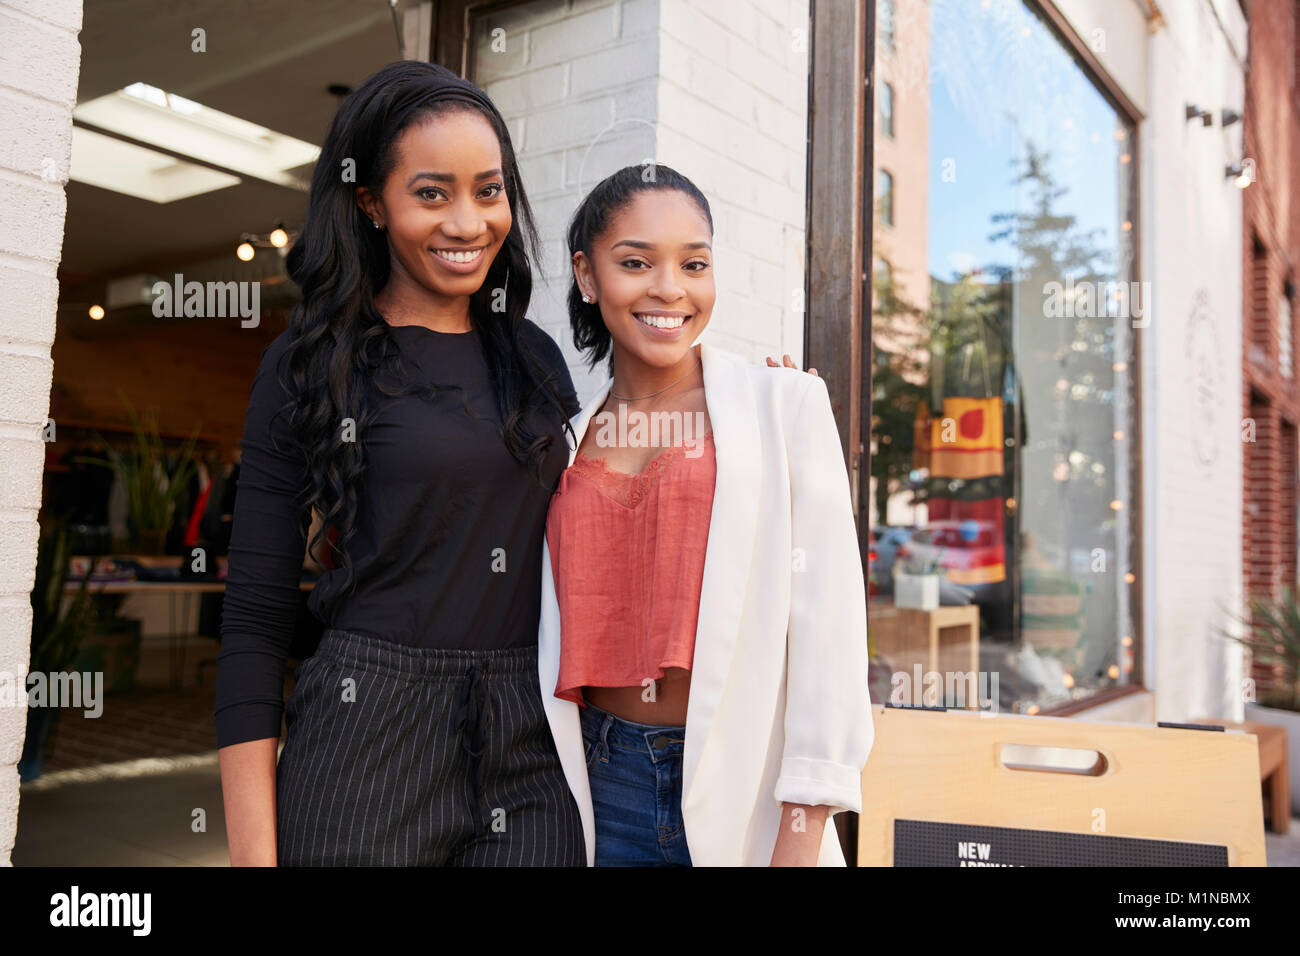 Dos mujeres jóvenes sonriendo a cámara fuera de su tienda de ropa Foto de stock